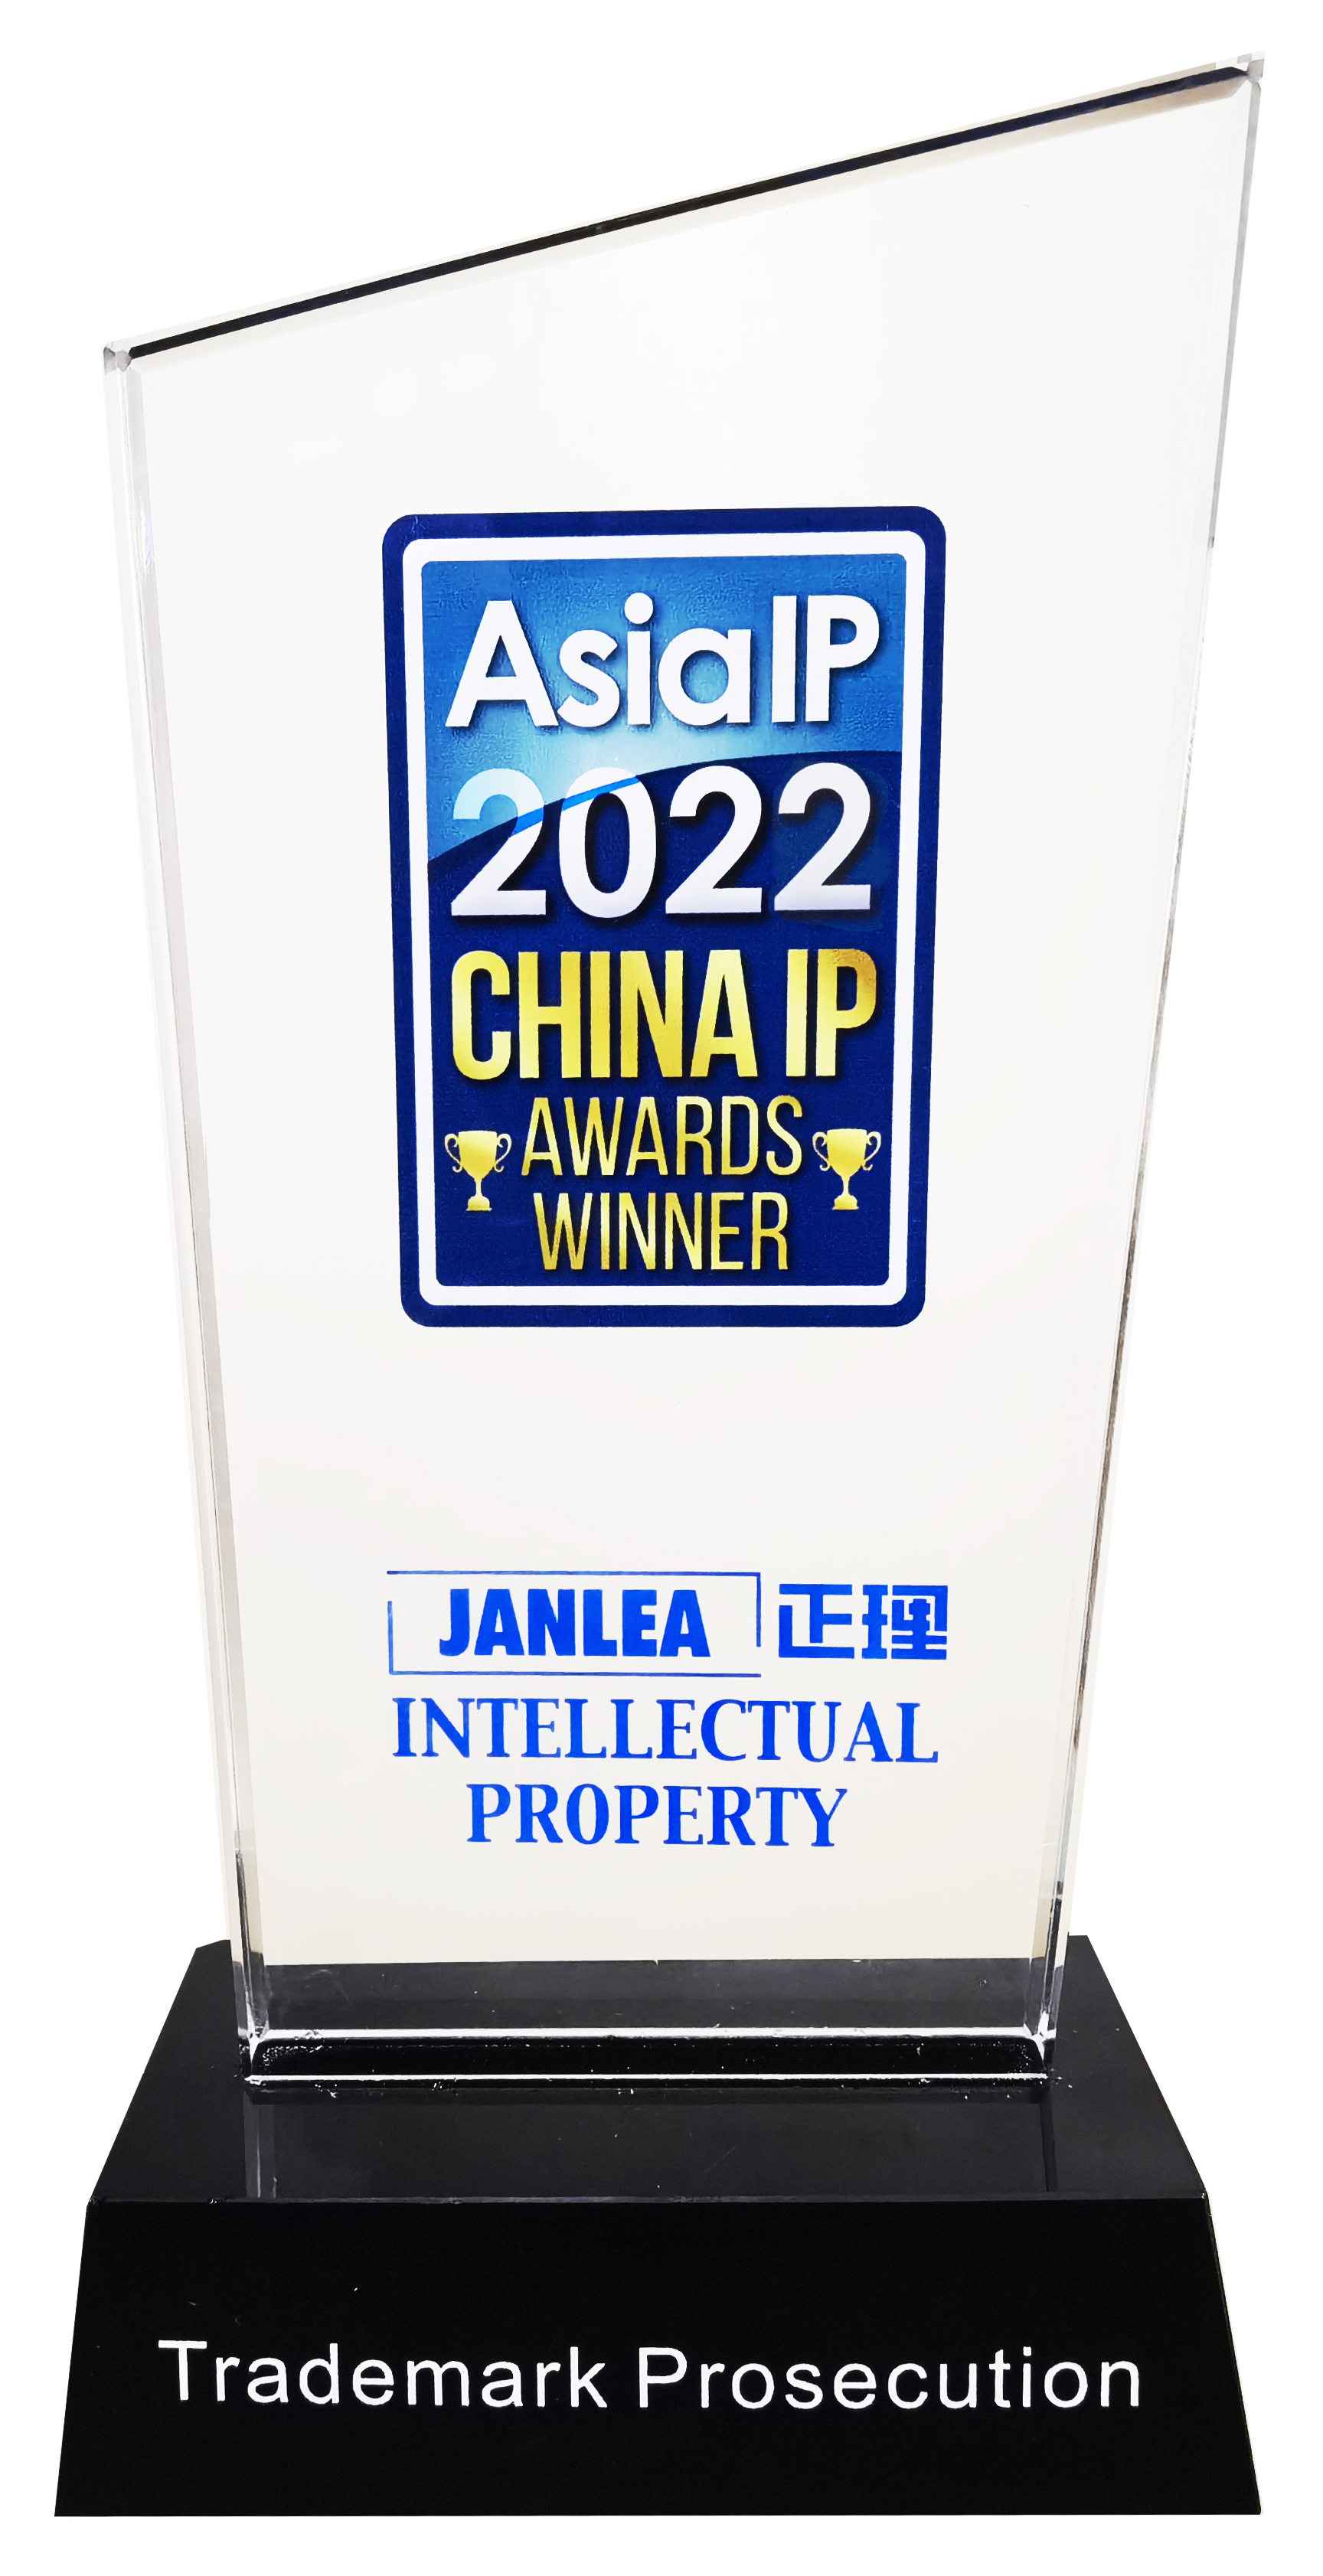 Asia IP 2022  CHINA  IP  AWARDS  WINNER